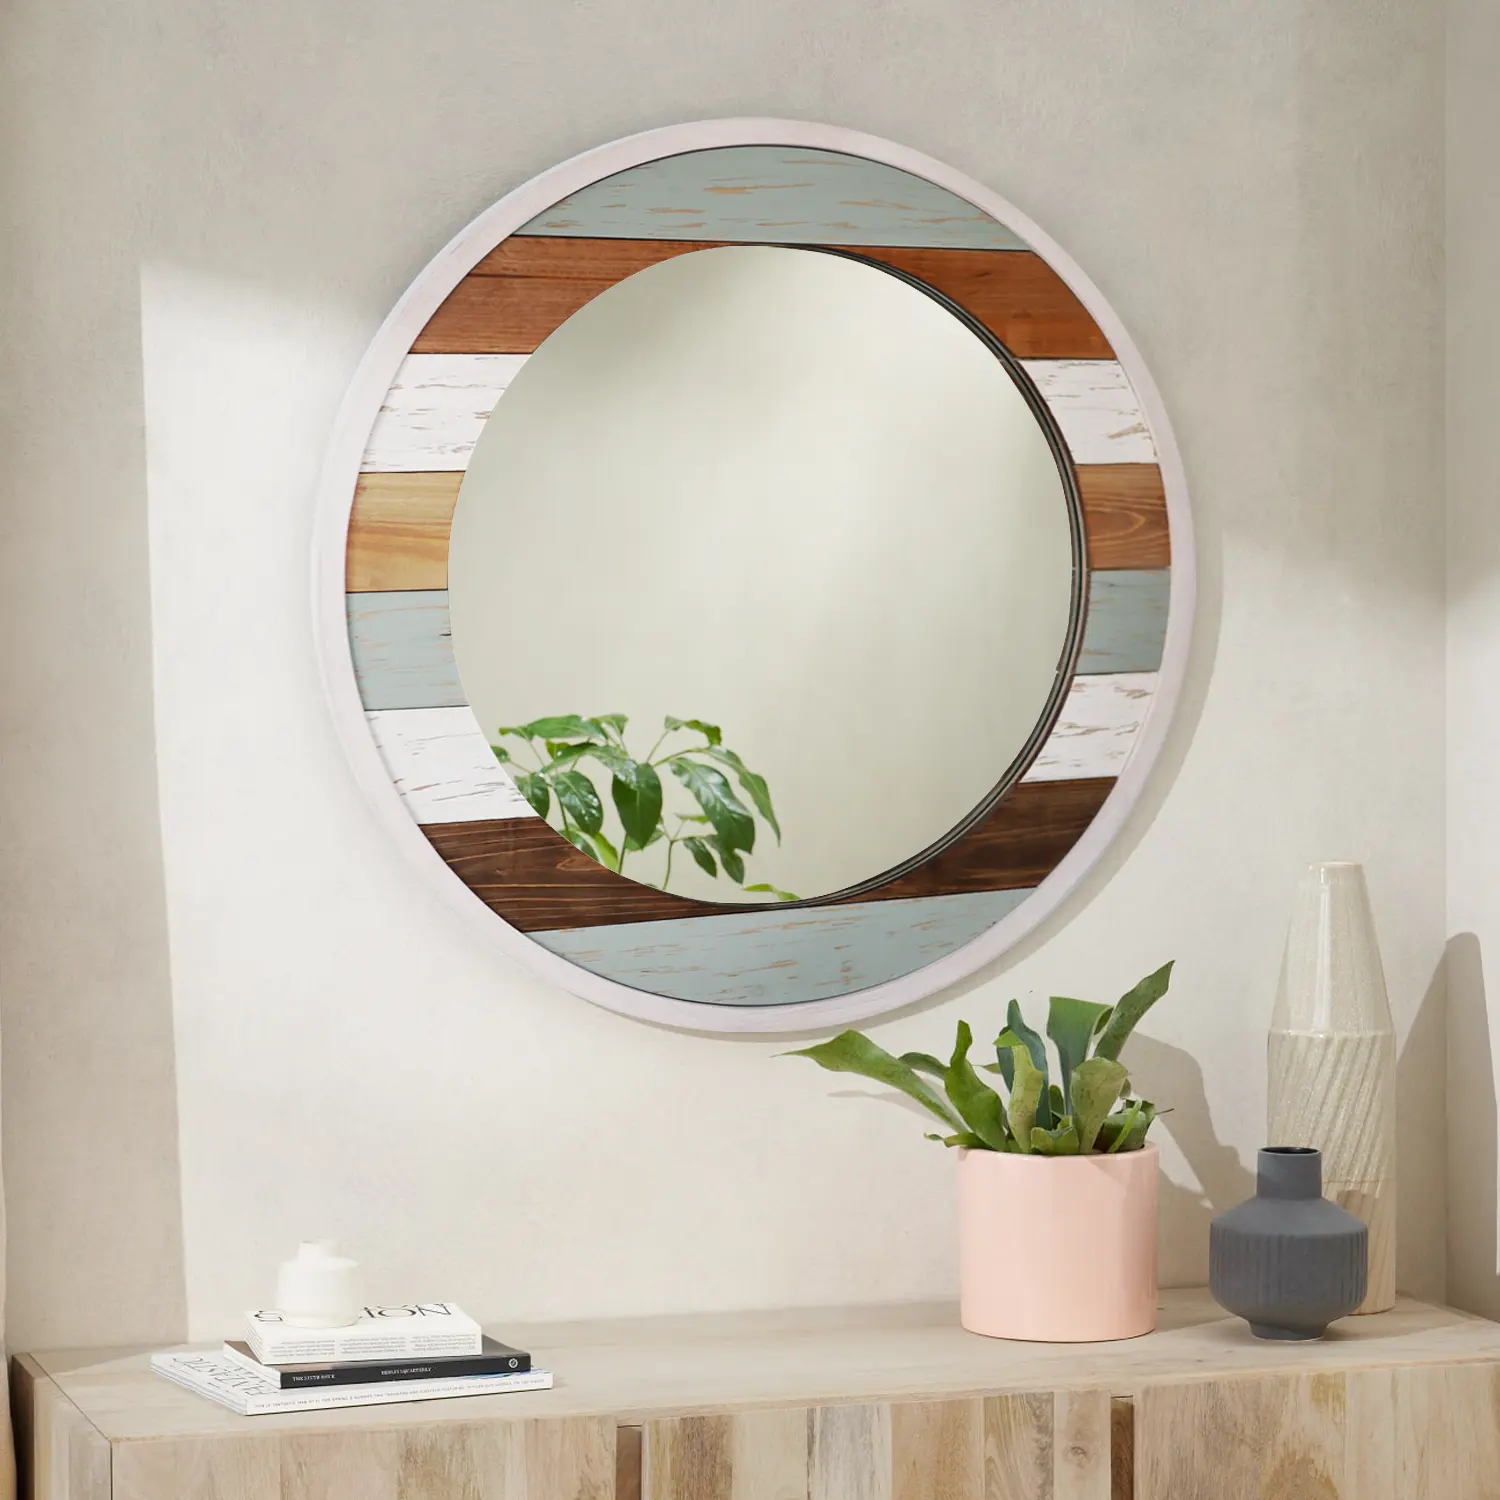 مرآة جدارية صديقة للبيئة مصنوعة يدوياً من خشب مطلي بالبيضاء بإطار منقوش تزيين دائري لغرفة المعيشة بالمنزل